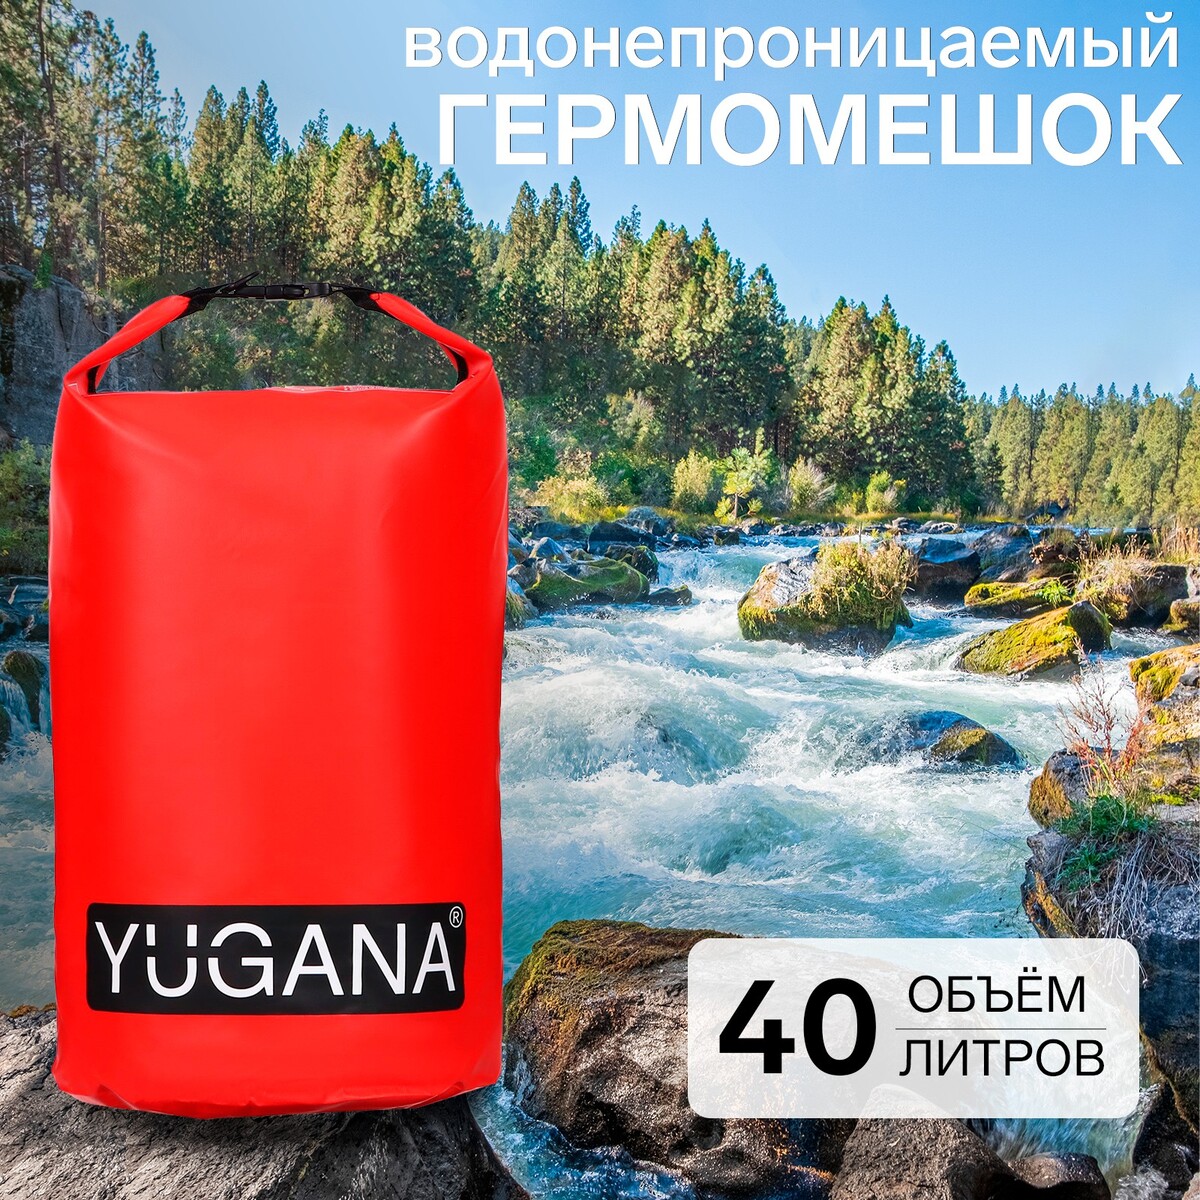 Гермомешок yugana, пвх, водонепроницаемый 40 литров, один ремень, красный